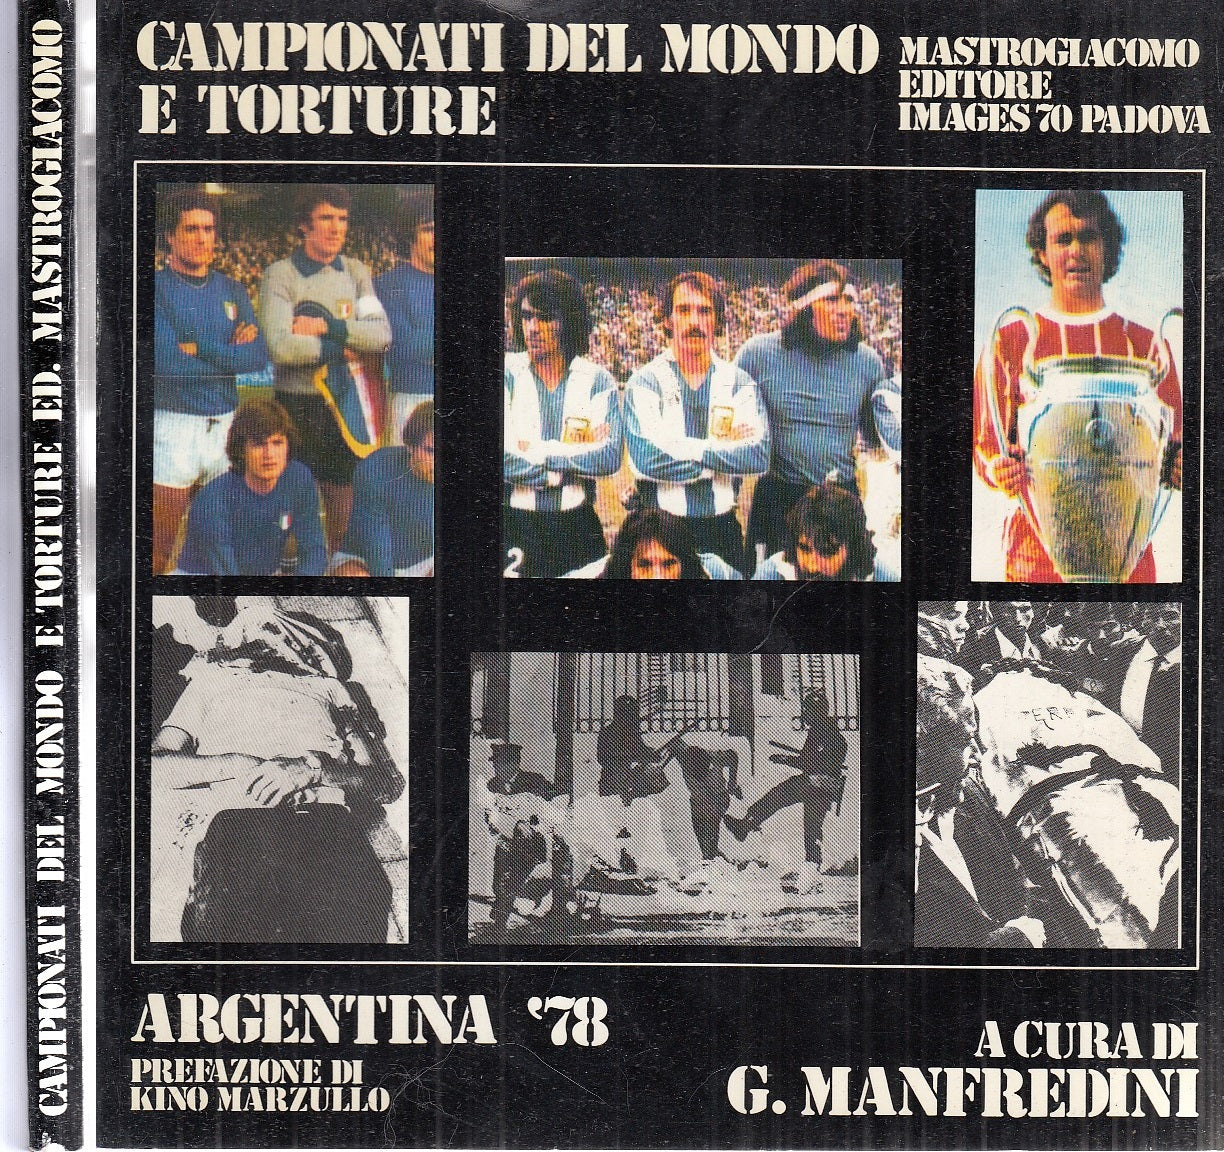 LC- CAMPIONATI DEL MONDO E TORTURE ARGENTINA '78 -- IMAGES 70--- 1978- B- XFS114